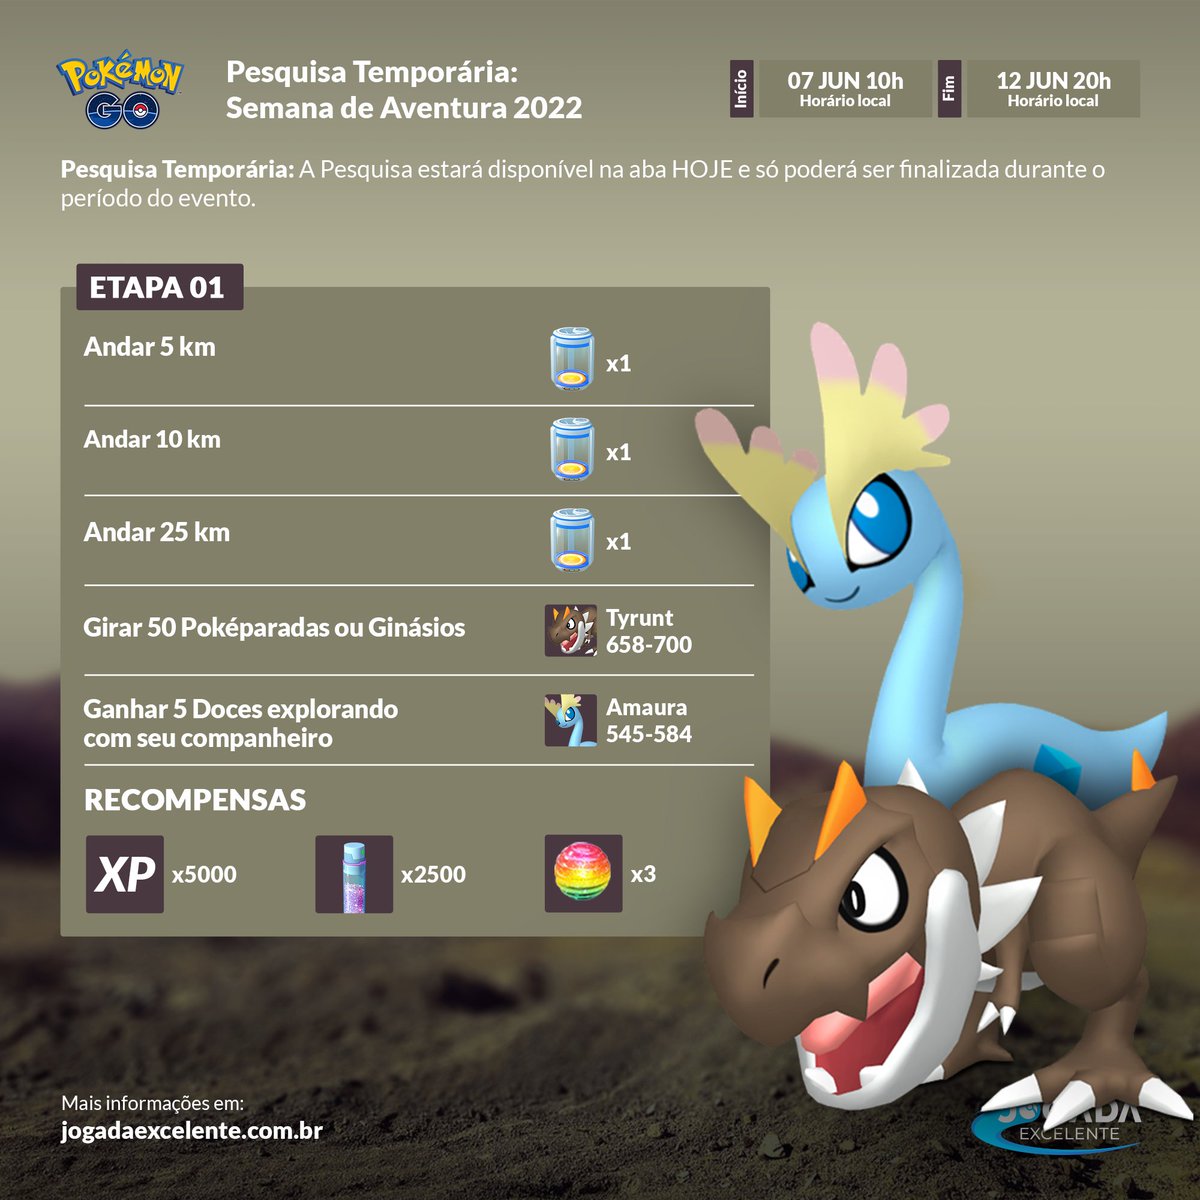 Jogada Excelente - GO Beyond: Kalos está chegando no Pokémon GO! ⠀⠀⠀⠀ A  partir de 02/12, Pokémon originalmente descobertos na região de Kalos  poderão ser encontrados no Pokémon GO. ⠀⠀⠀⠀ Haverá um